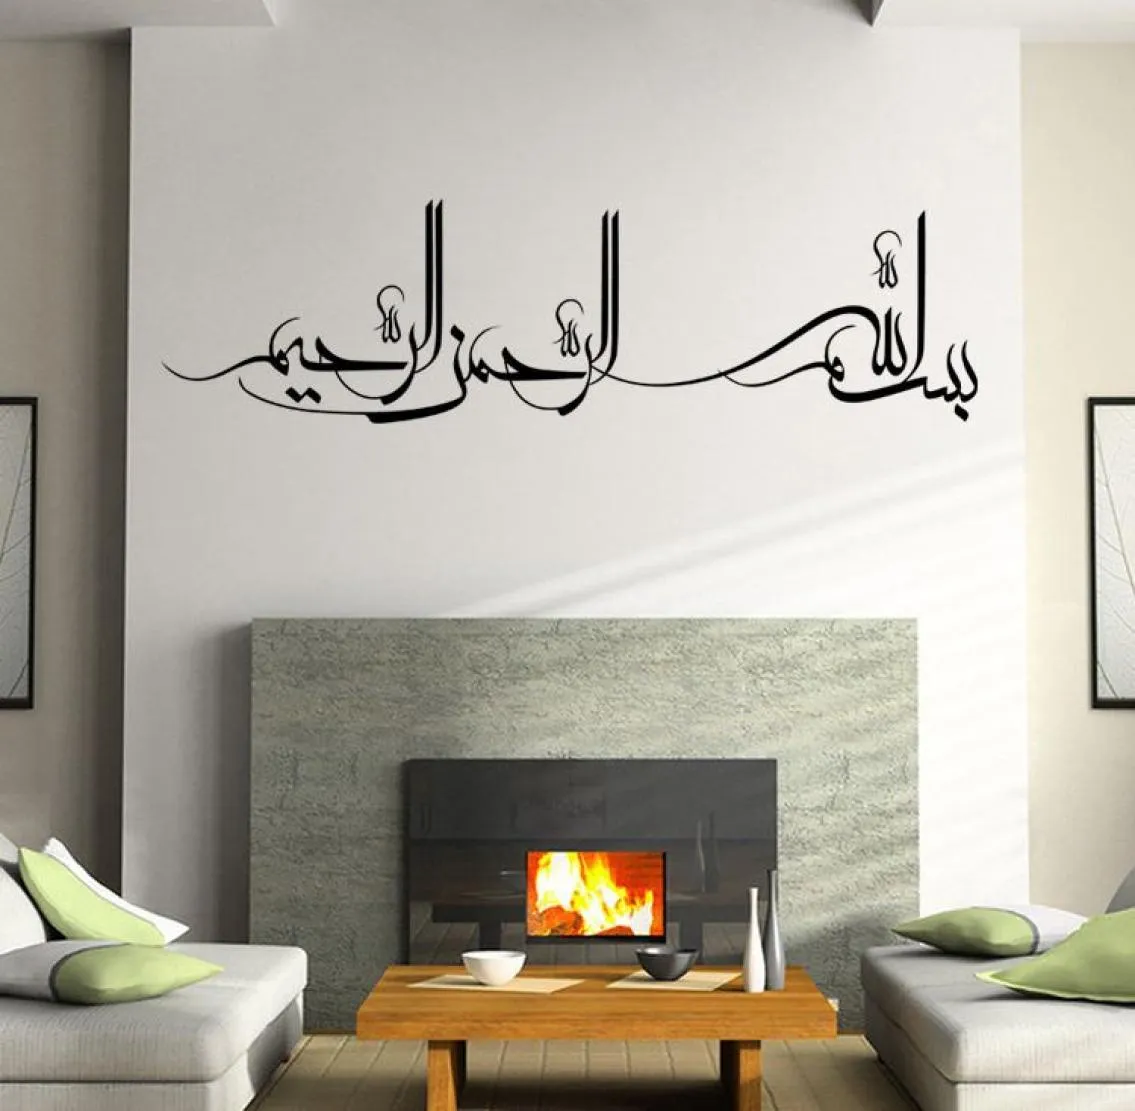 Nya islamiska muslimska överföring Vinyl Wall Stickers Home Art Mural Decal Creative Wall Applique Poster Wallpaper Graphic Decor8973707